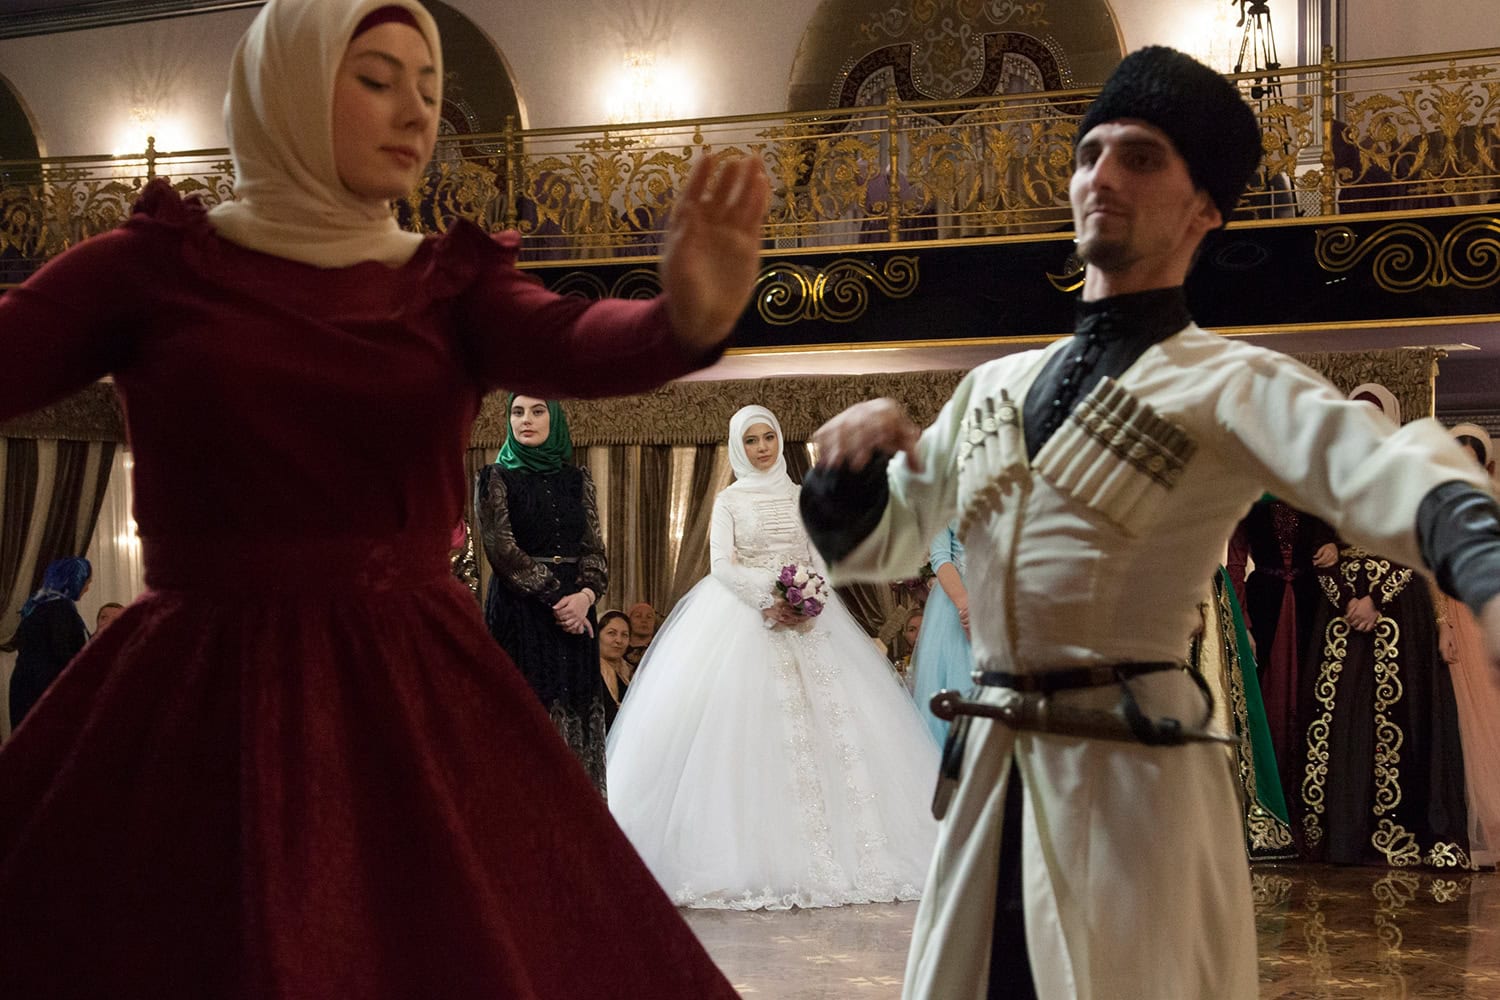 Chechenia prohibe a hombres y mujeres bailar juntos en las bodas